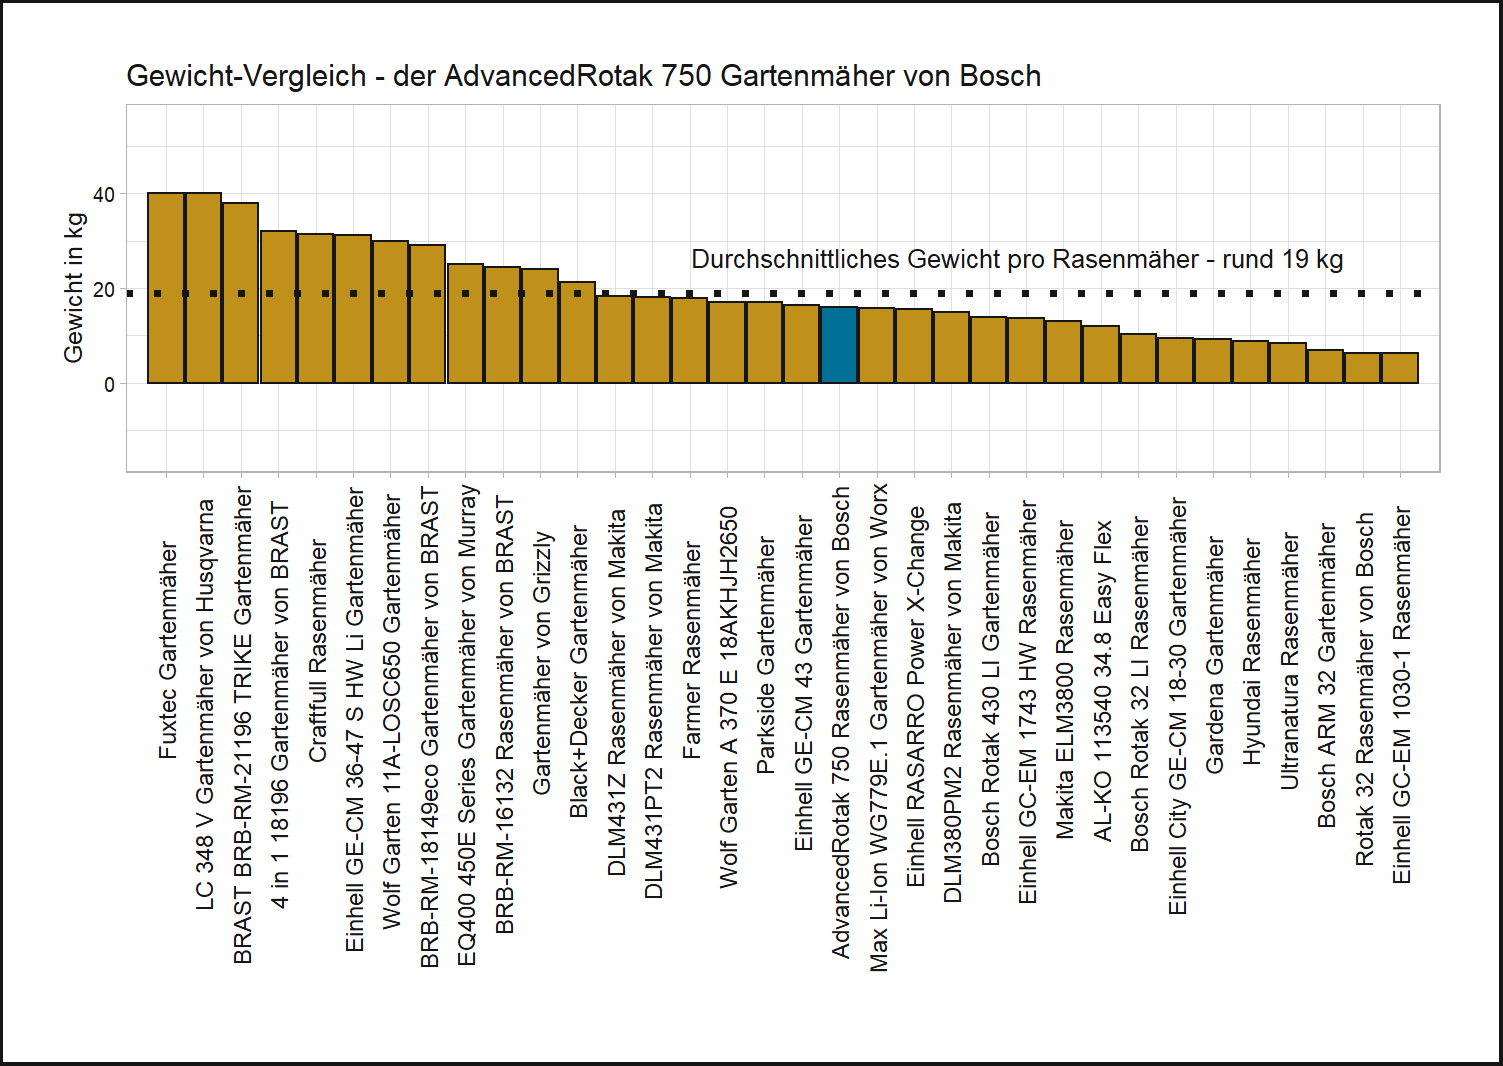 Gewicht-Vergleich von dem Bosch Gartenmäher AdvancedRotak 750